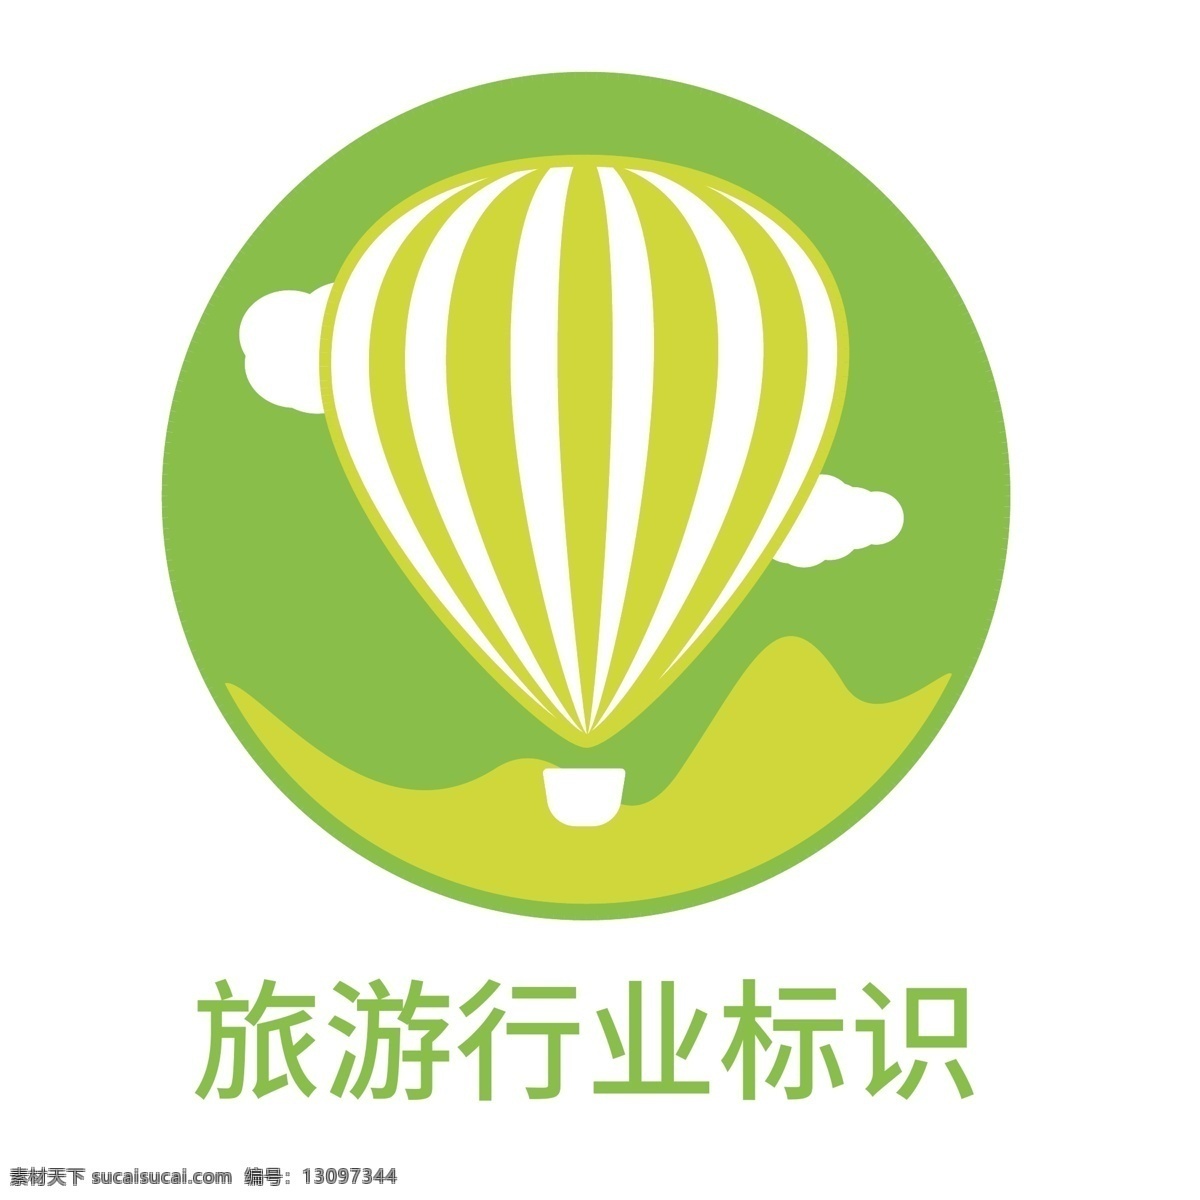 旅游 行业 标识 logo 旅游logo 旅游行业 绿色logo 旅行 旅游标识